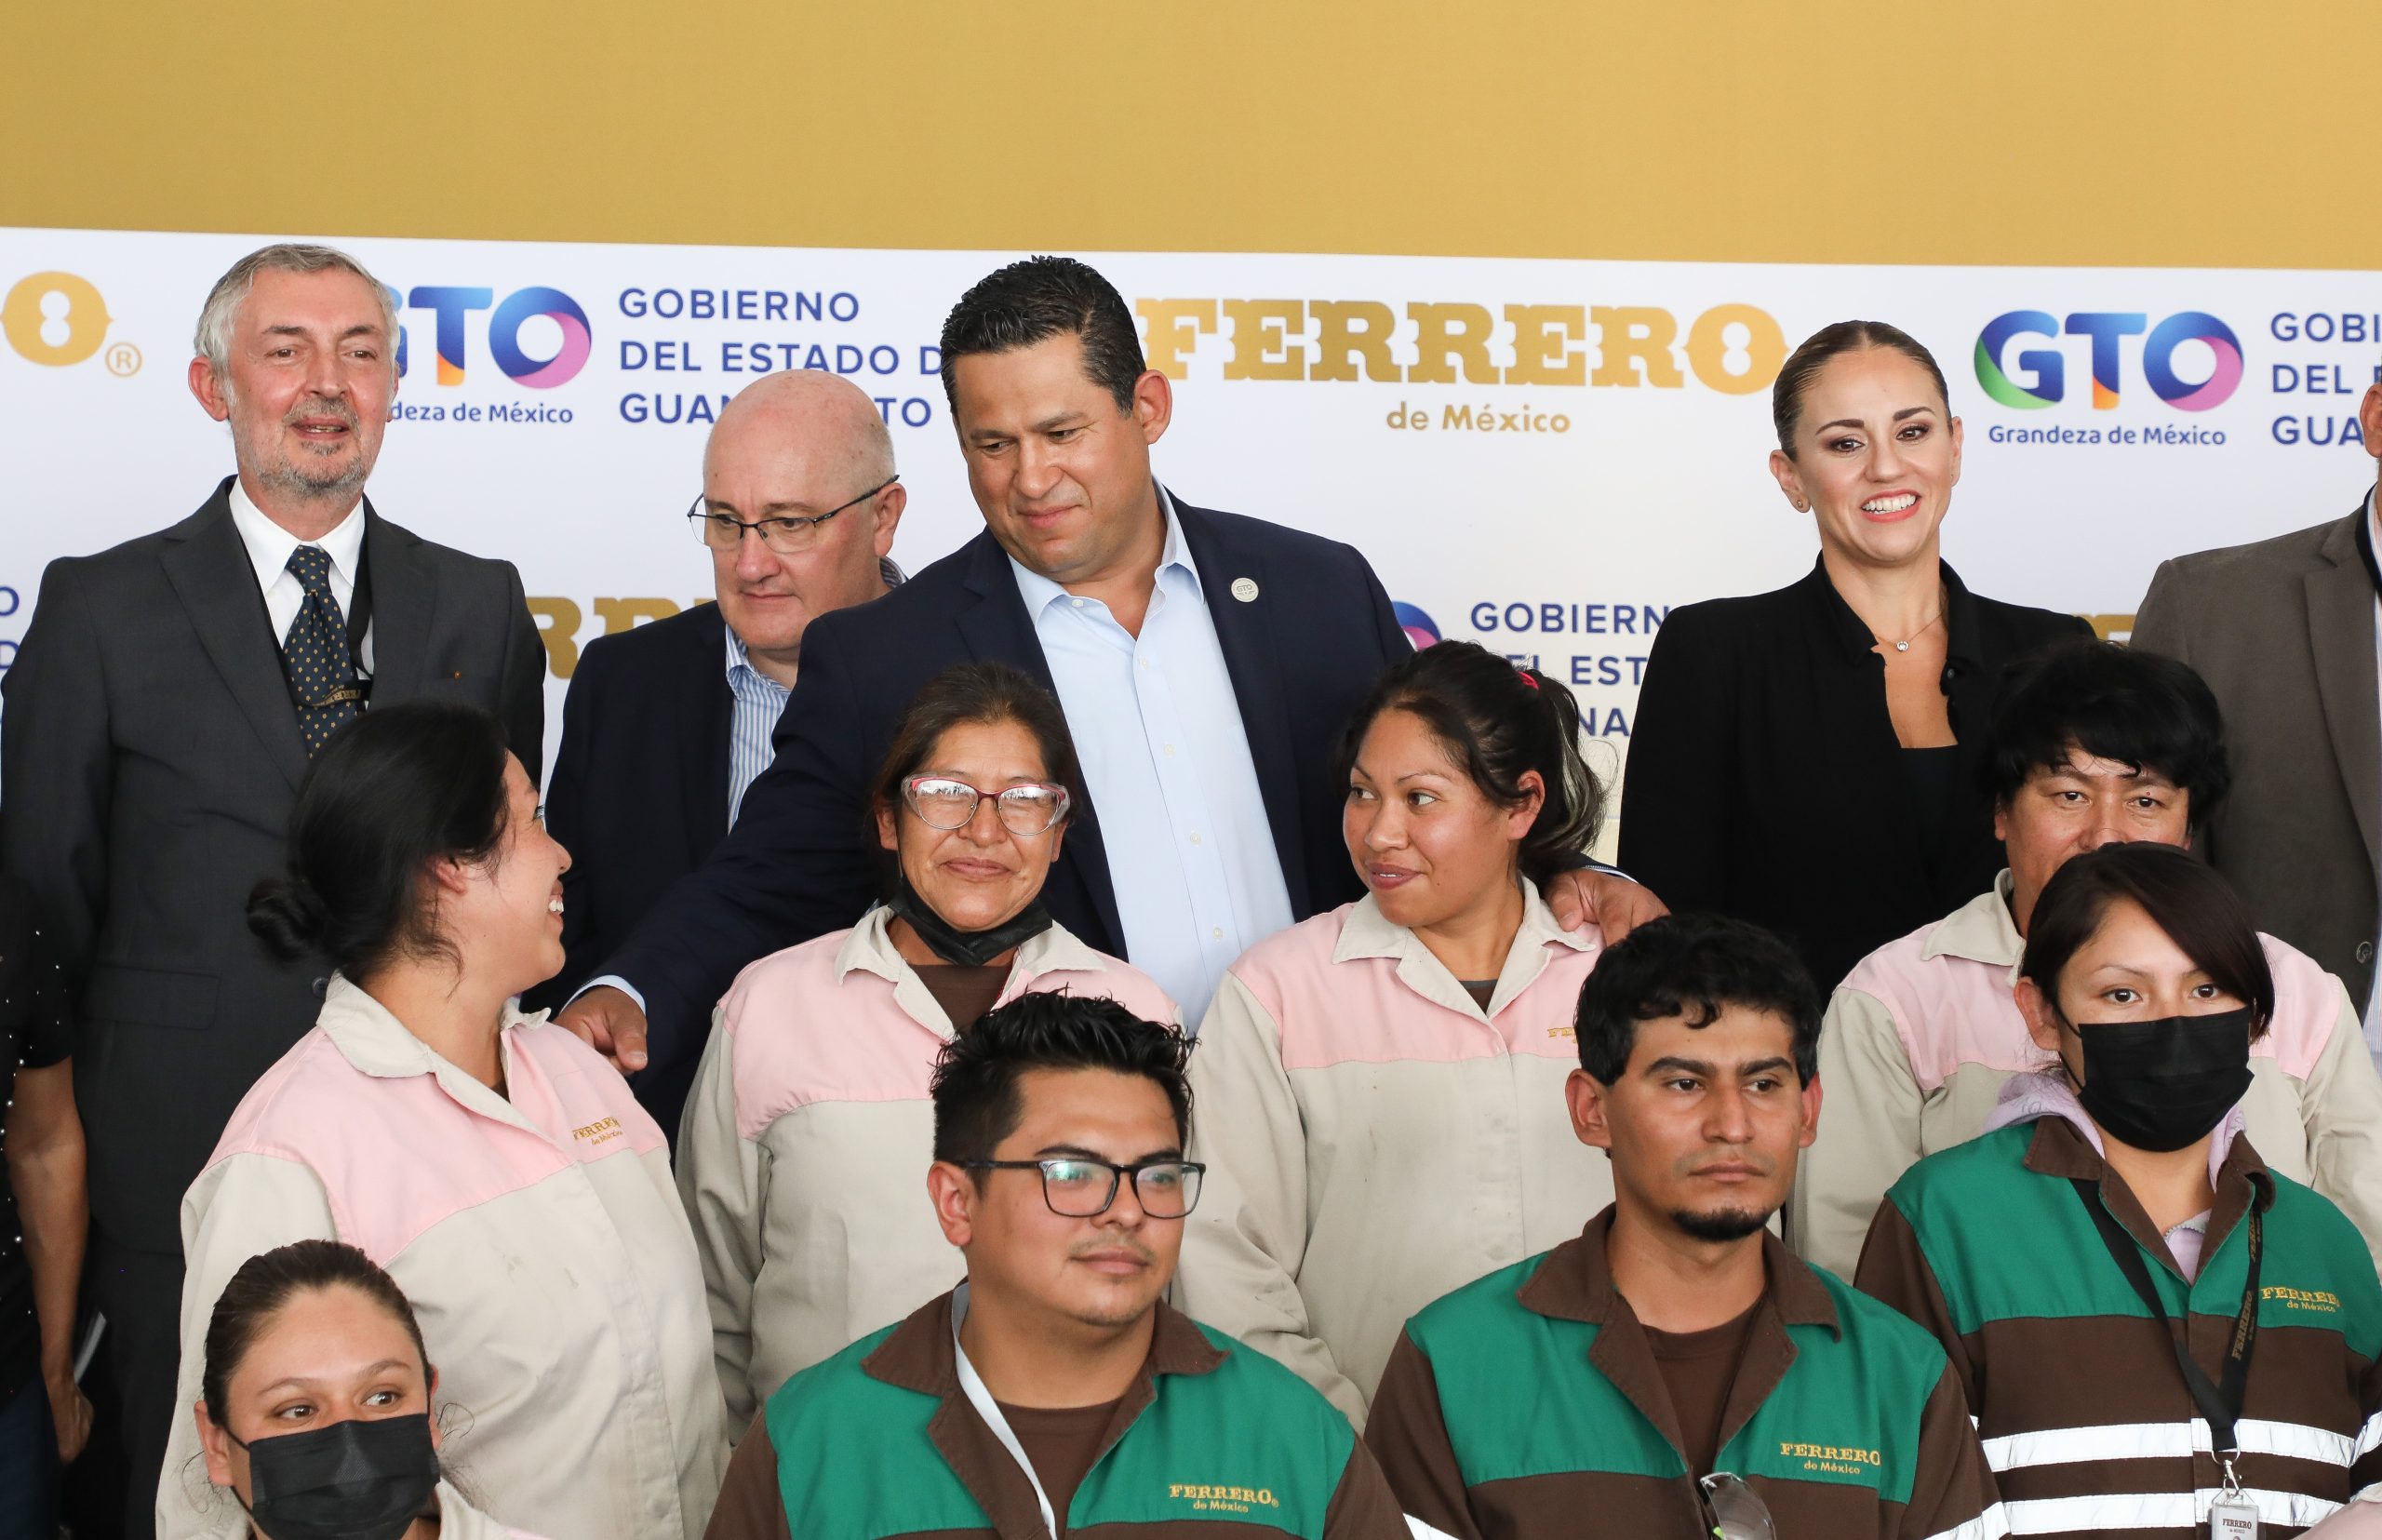 Ferrero reafirma su confianza con una inversión de 50 mdd en Guanajuato: Diego Sinhue Rodríguez